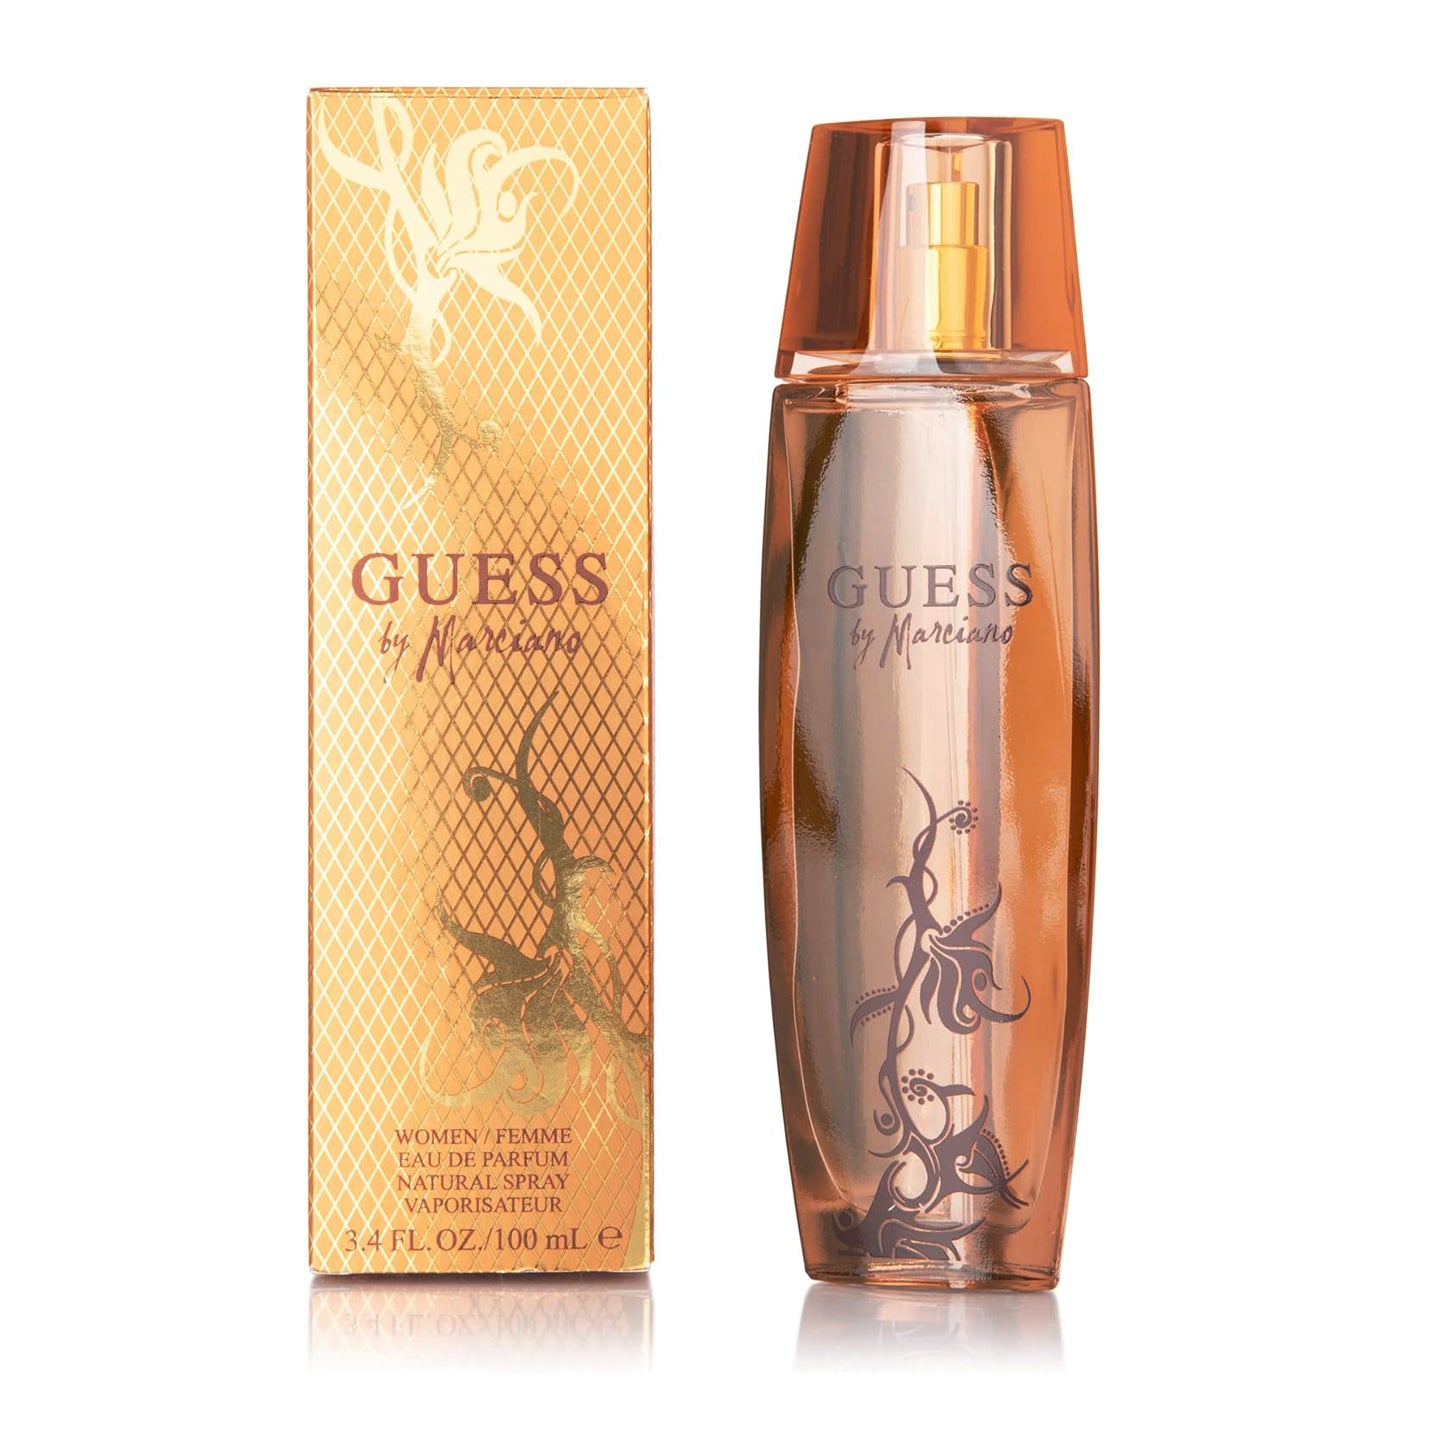 Guess Marciano by Guess 100 ml Eau De Perfume Spray for Women